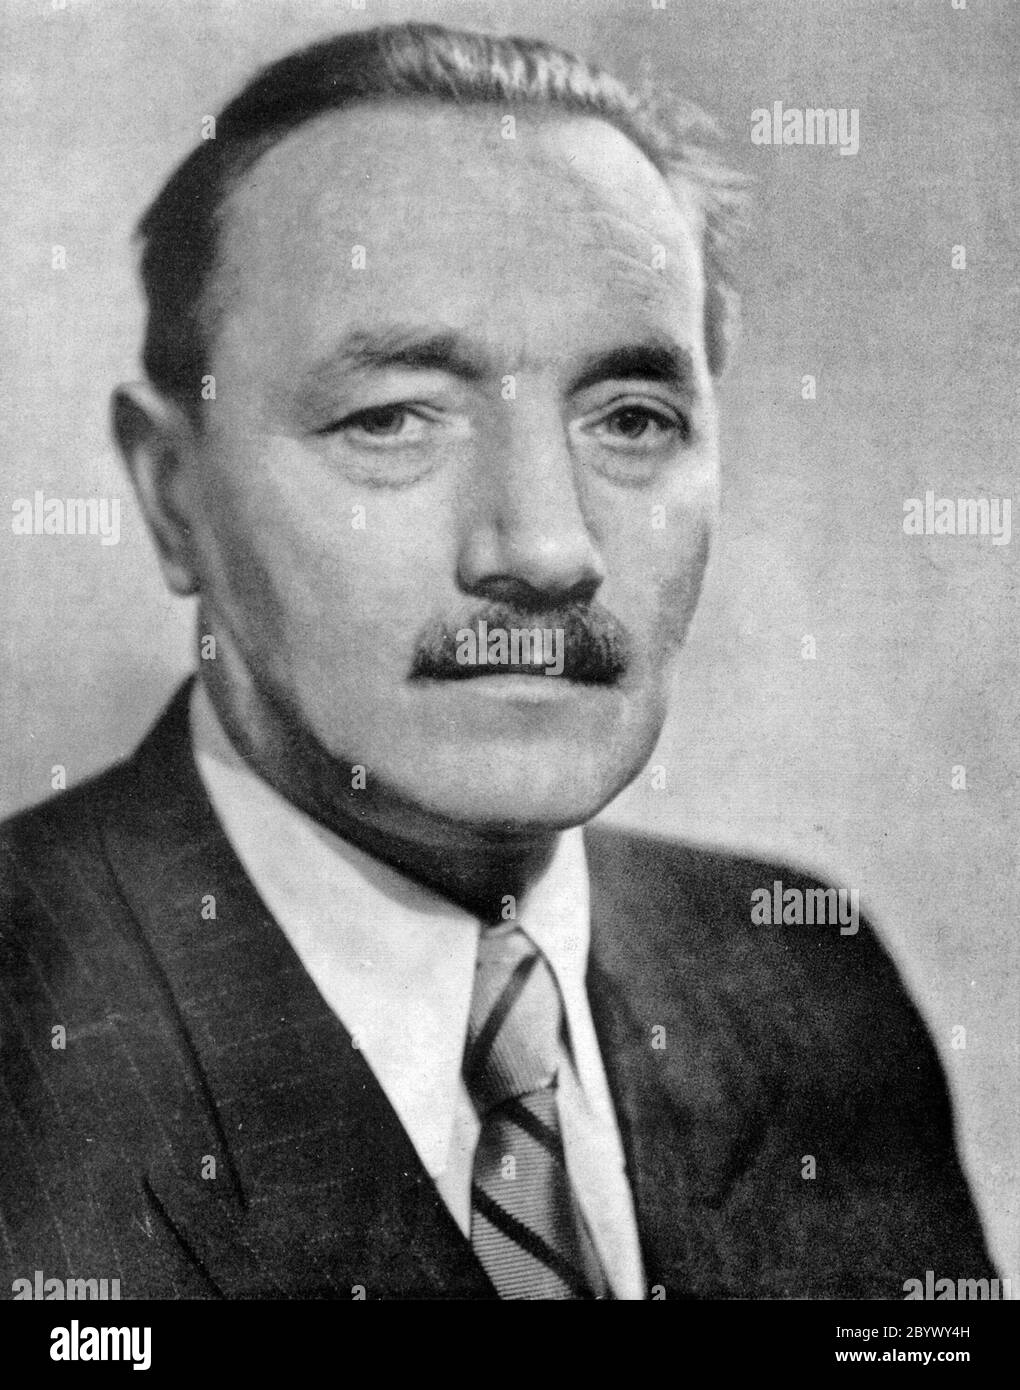 Polnischer Politiker, kommunistischer Aktivist und de facto Diktator Polens zwischen 1947 und 1956, Bolesław Bierut (unbekanntes Datum) Stockfoto